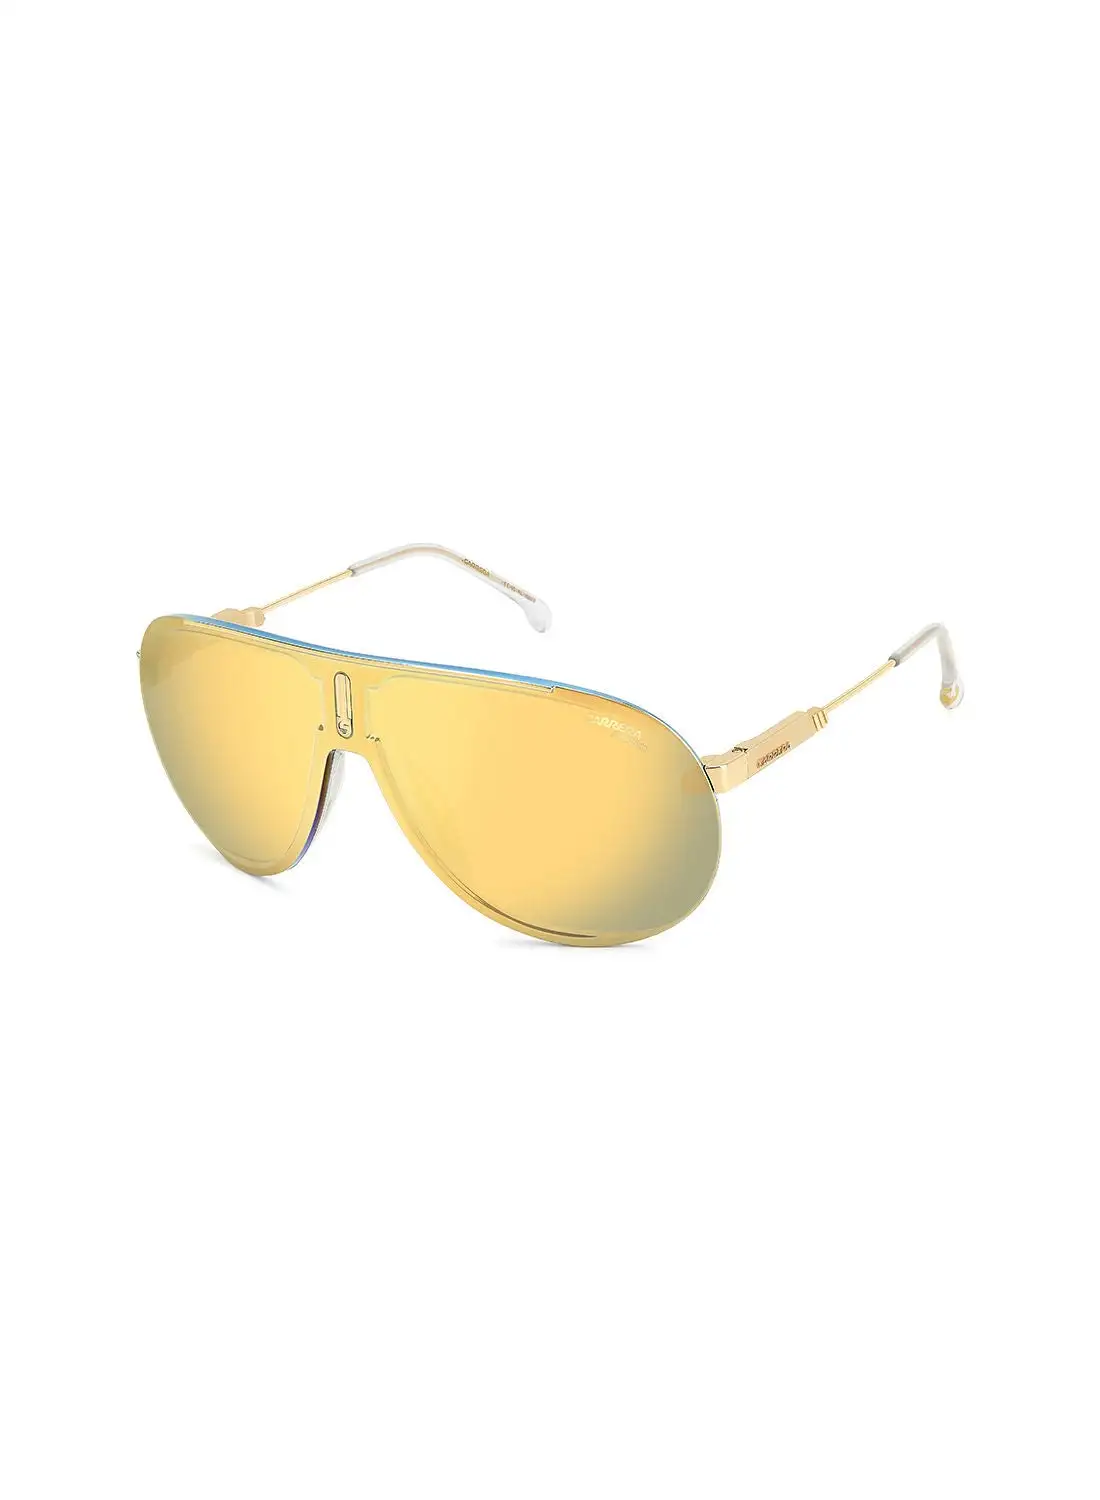 نظارة شمسية بايلوت للحماية من الأشعة فوق البنفسجية للجنسين من كاريرا - سوبر تشامبيون جولد 99 - مقاس العدسة: 99 ملم